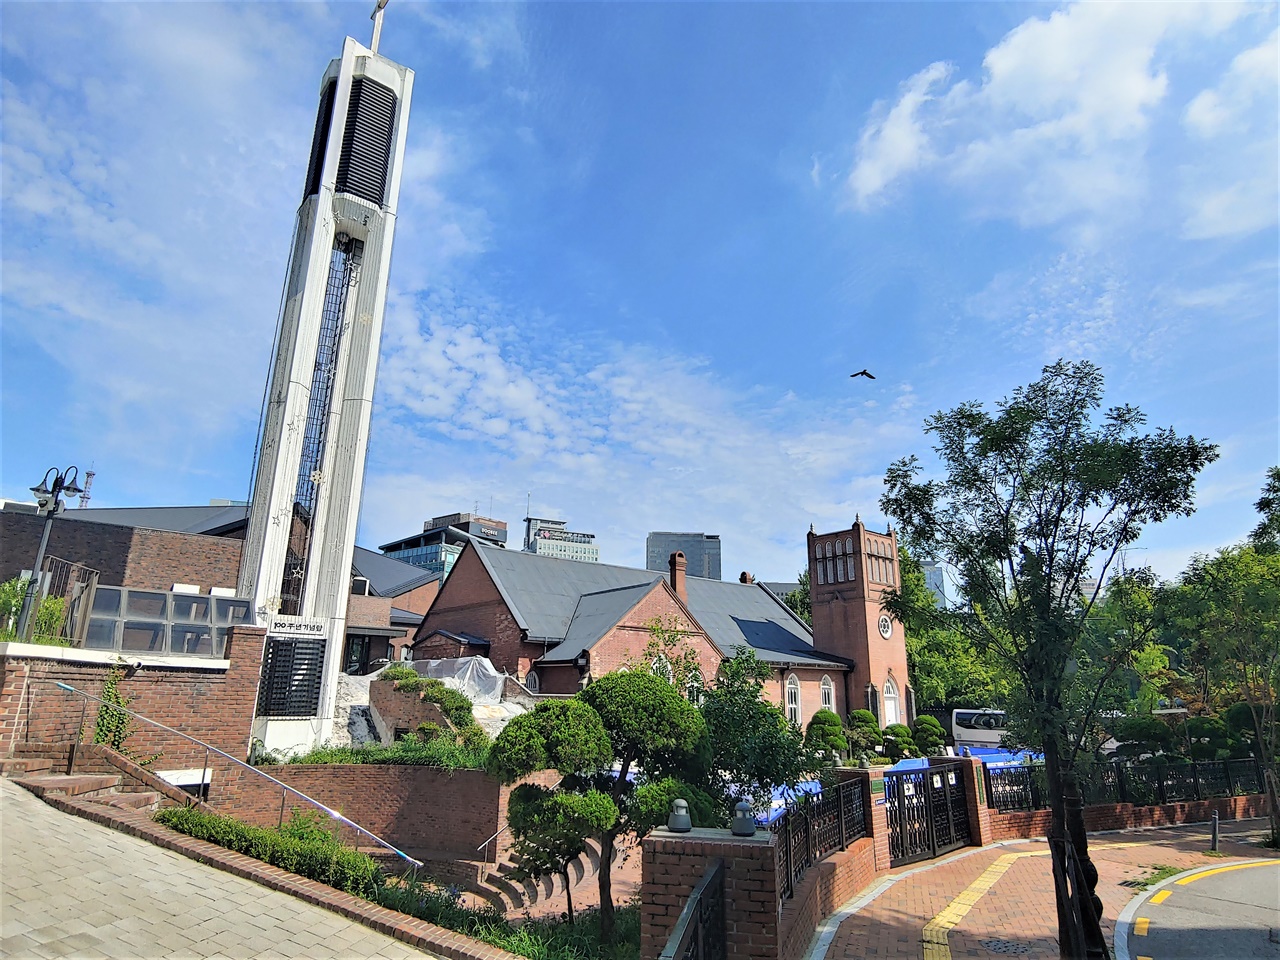 100주년 기념탑과 1897년 지어진 교회가 같이 보인다. 교회 경역은 많은 건축물들로 빼곡하다.